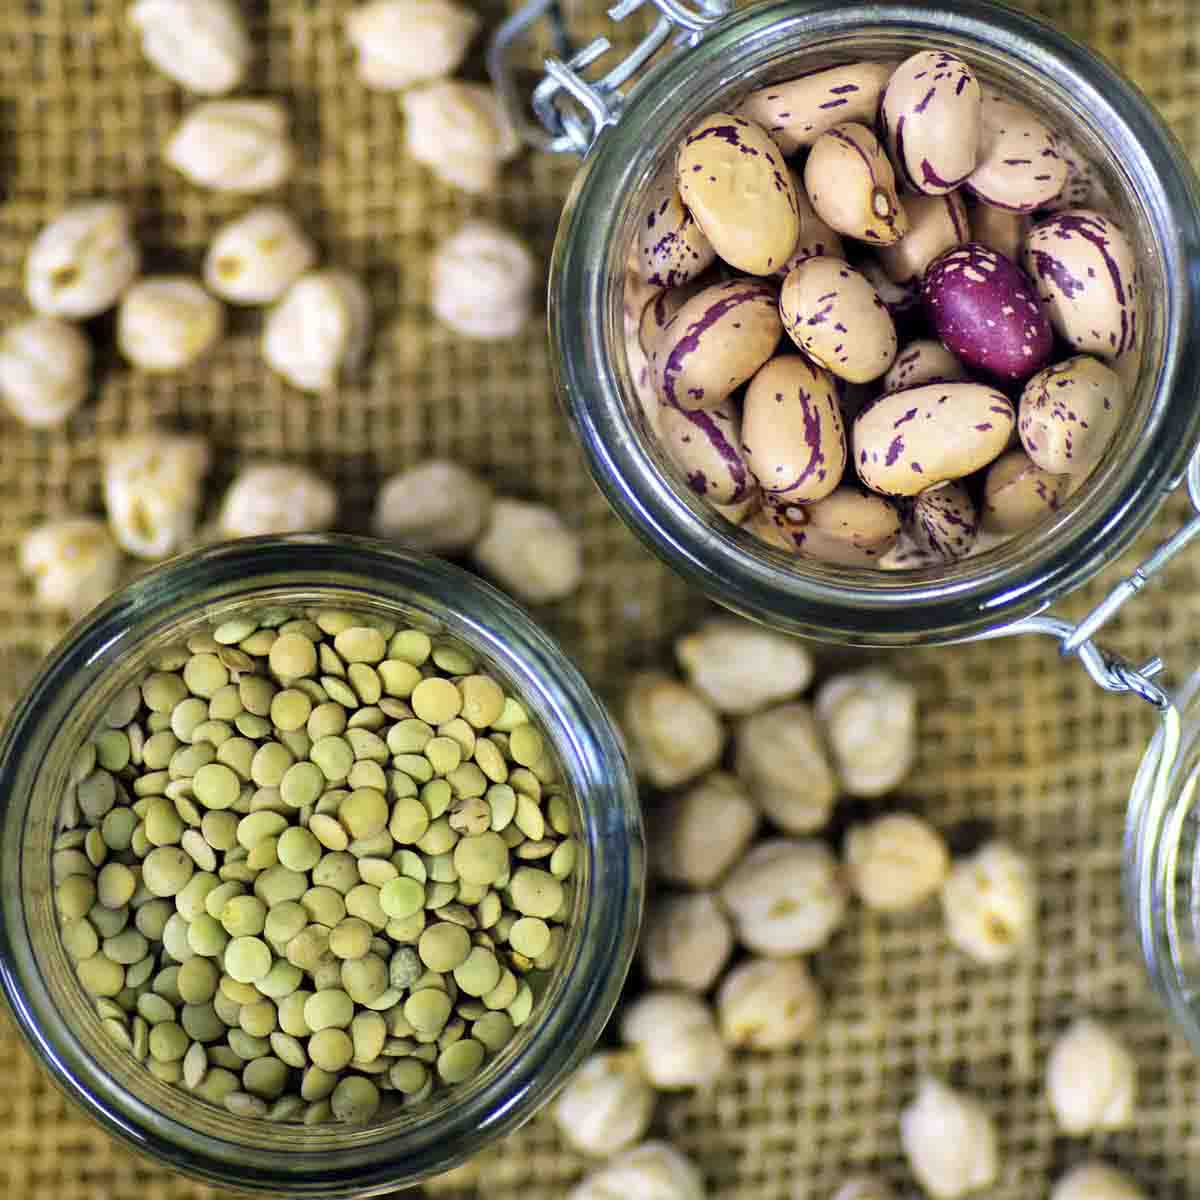 Dry beans in jars.